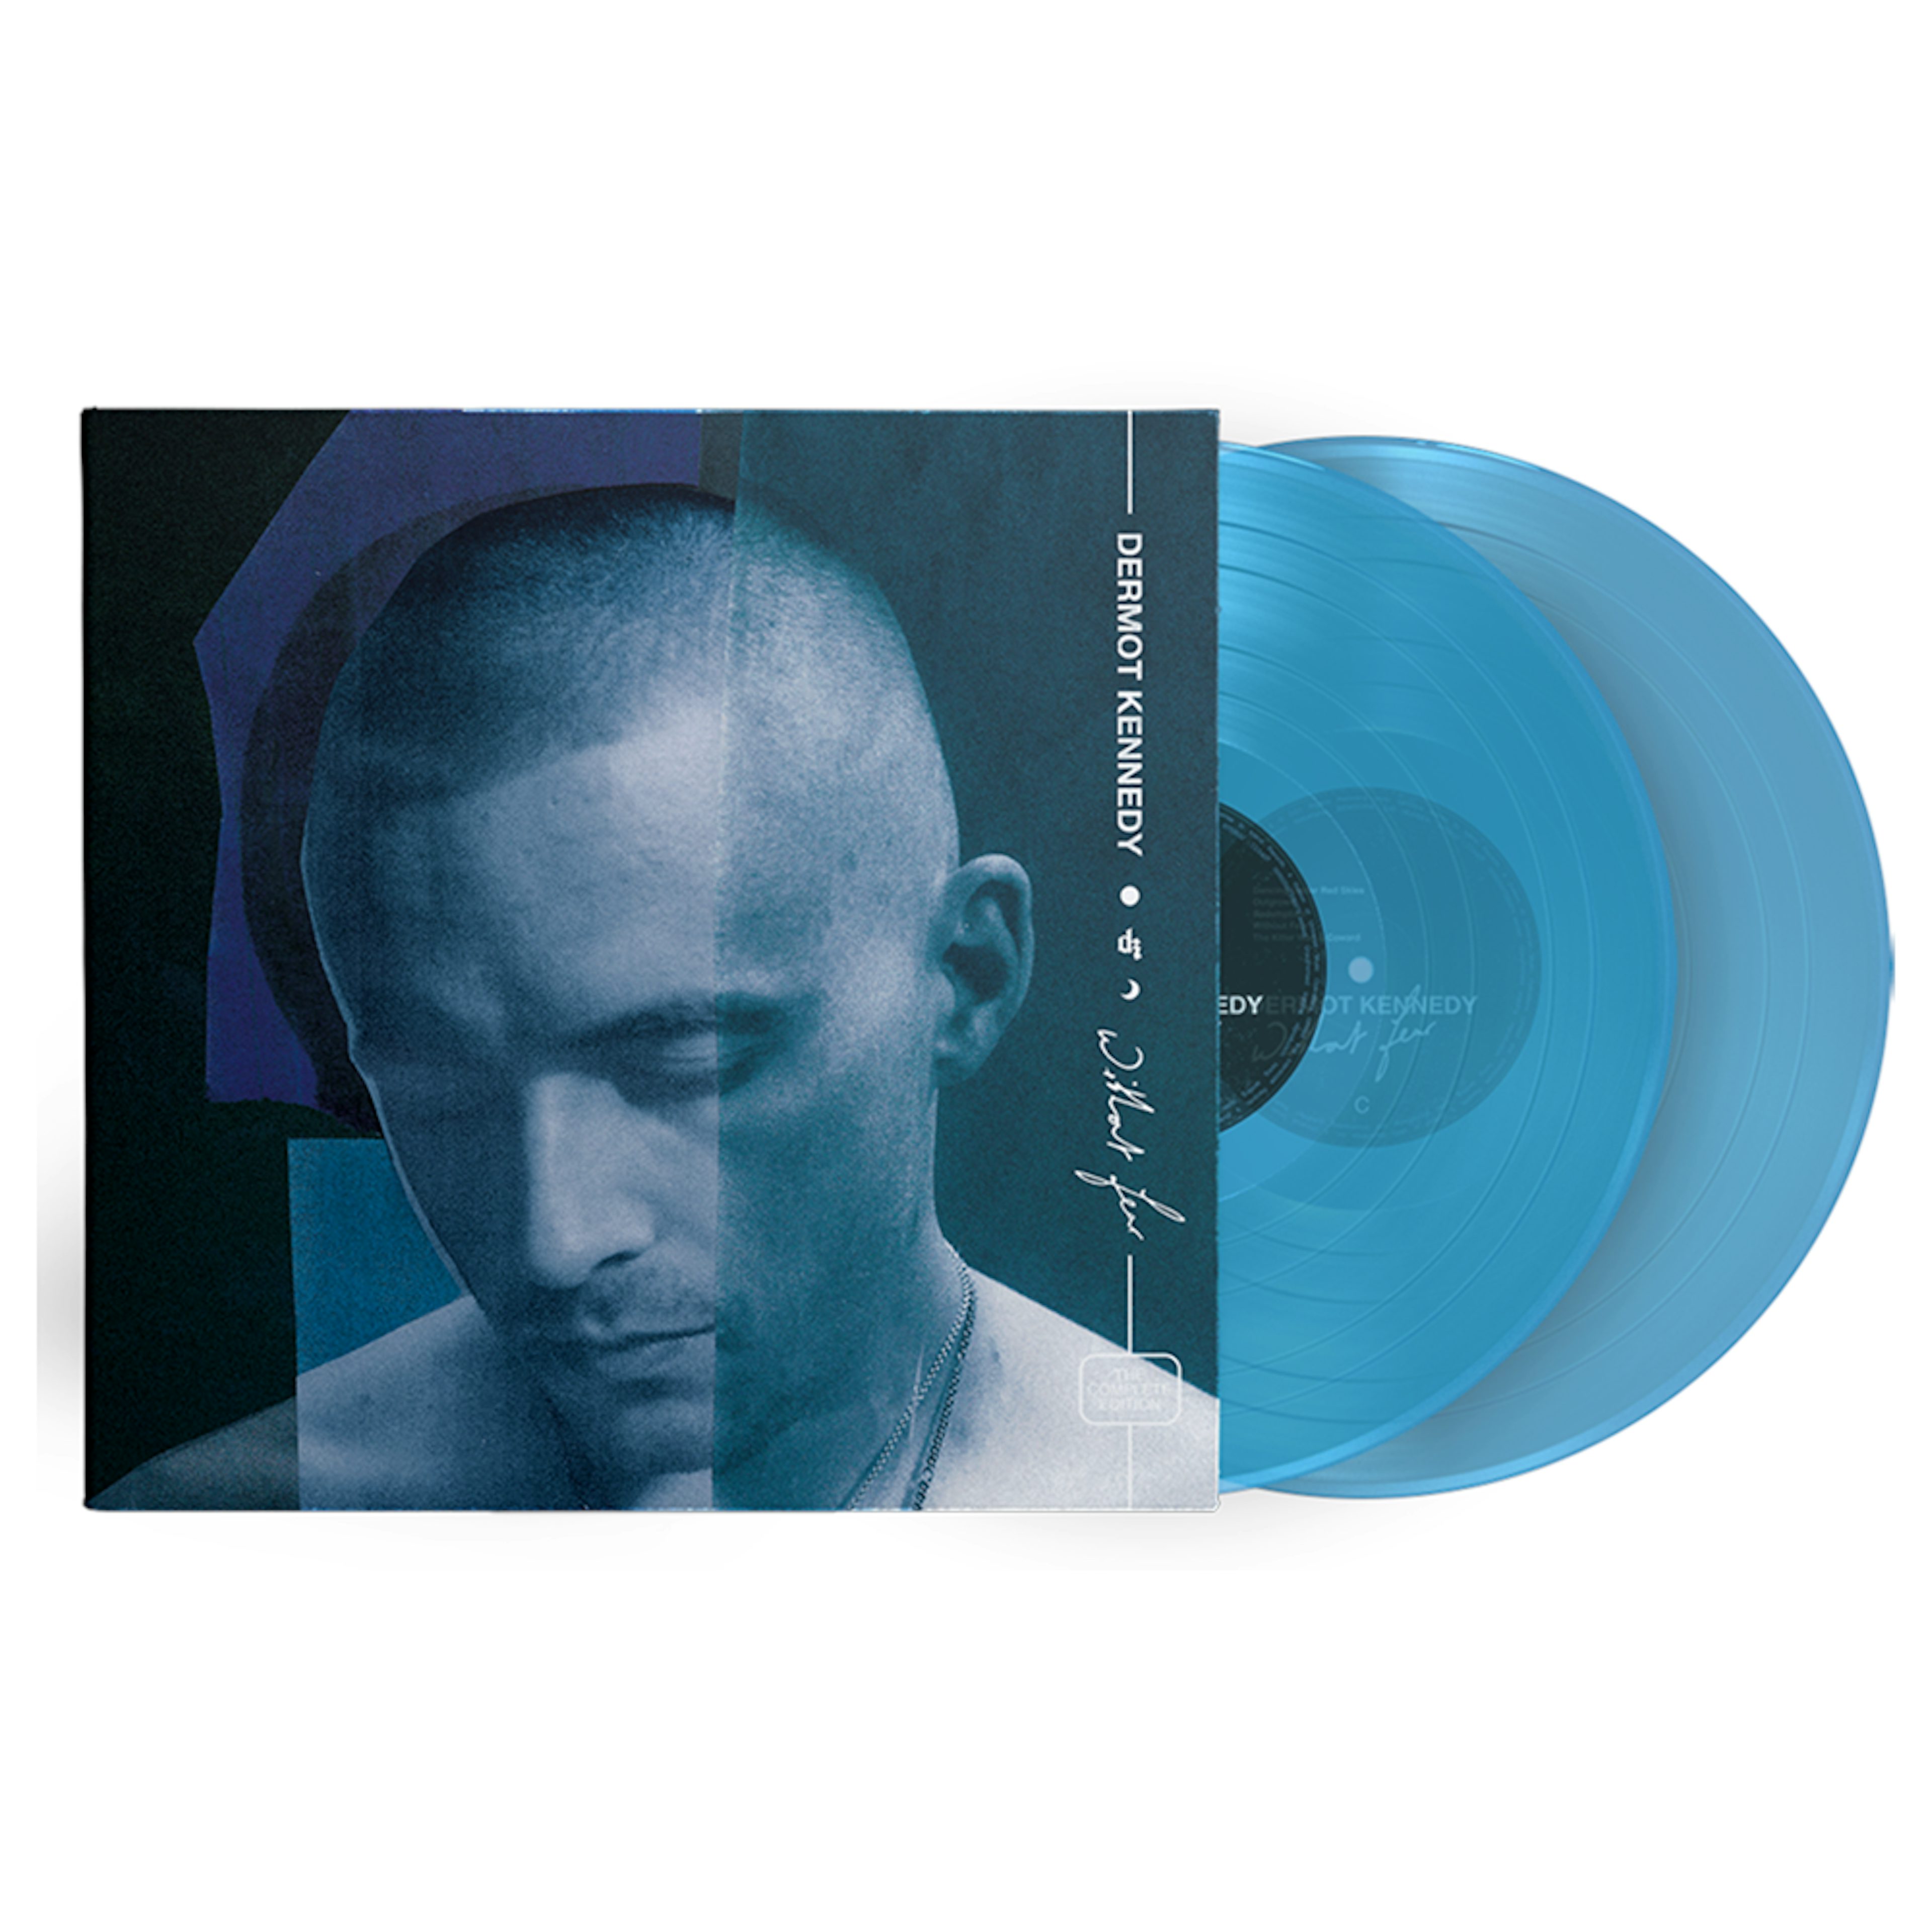 Dermot Fear: Complete Edition Blue 2LP (Vinyl)